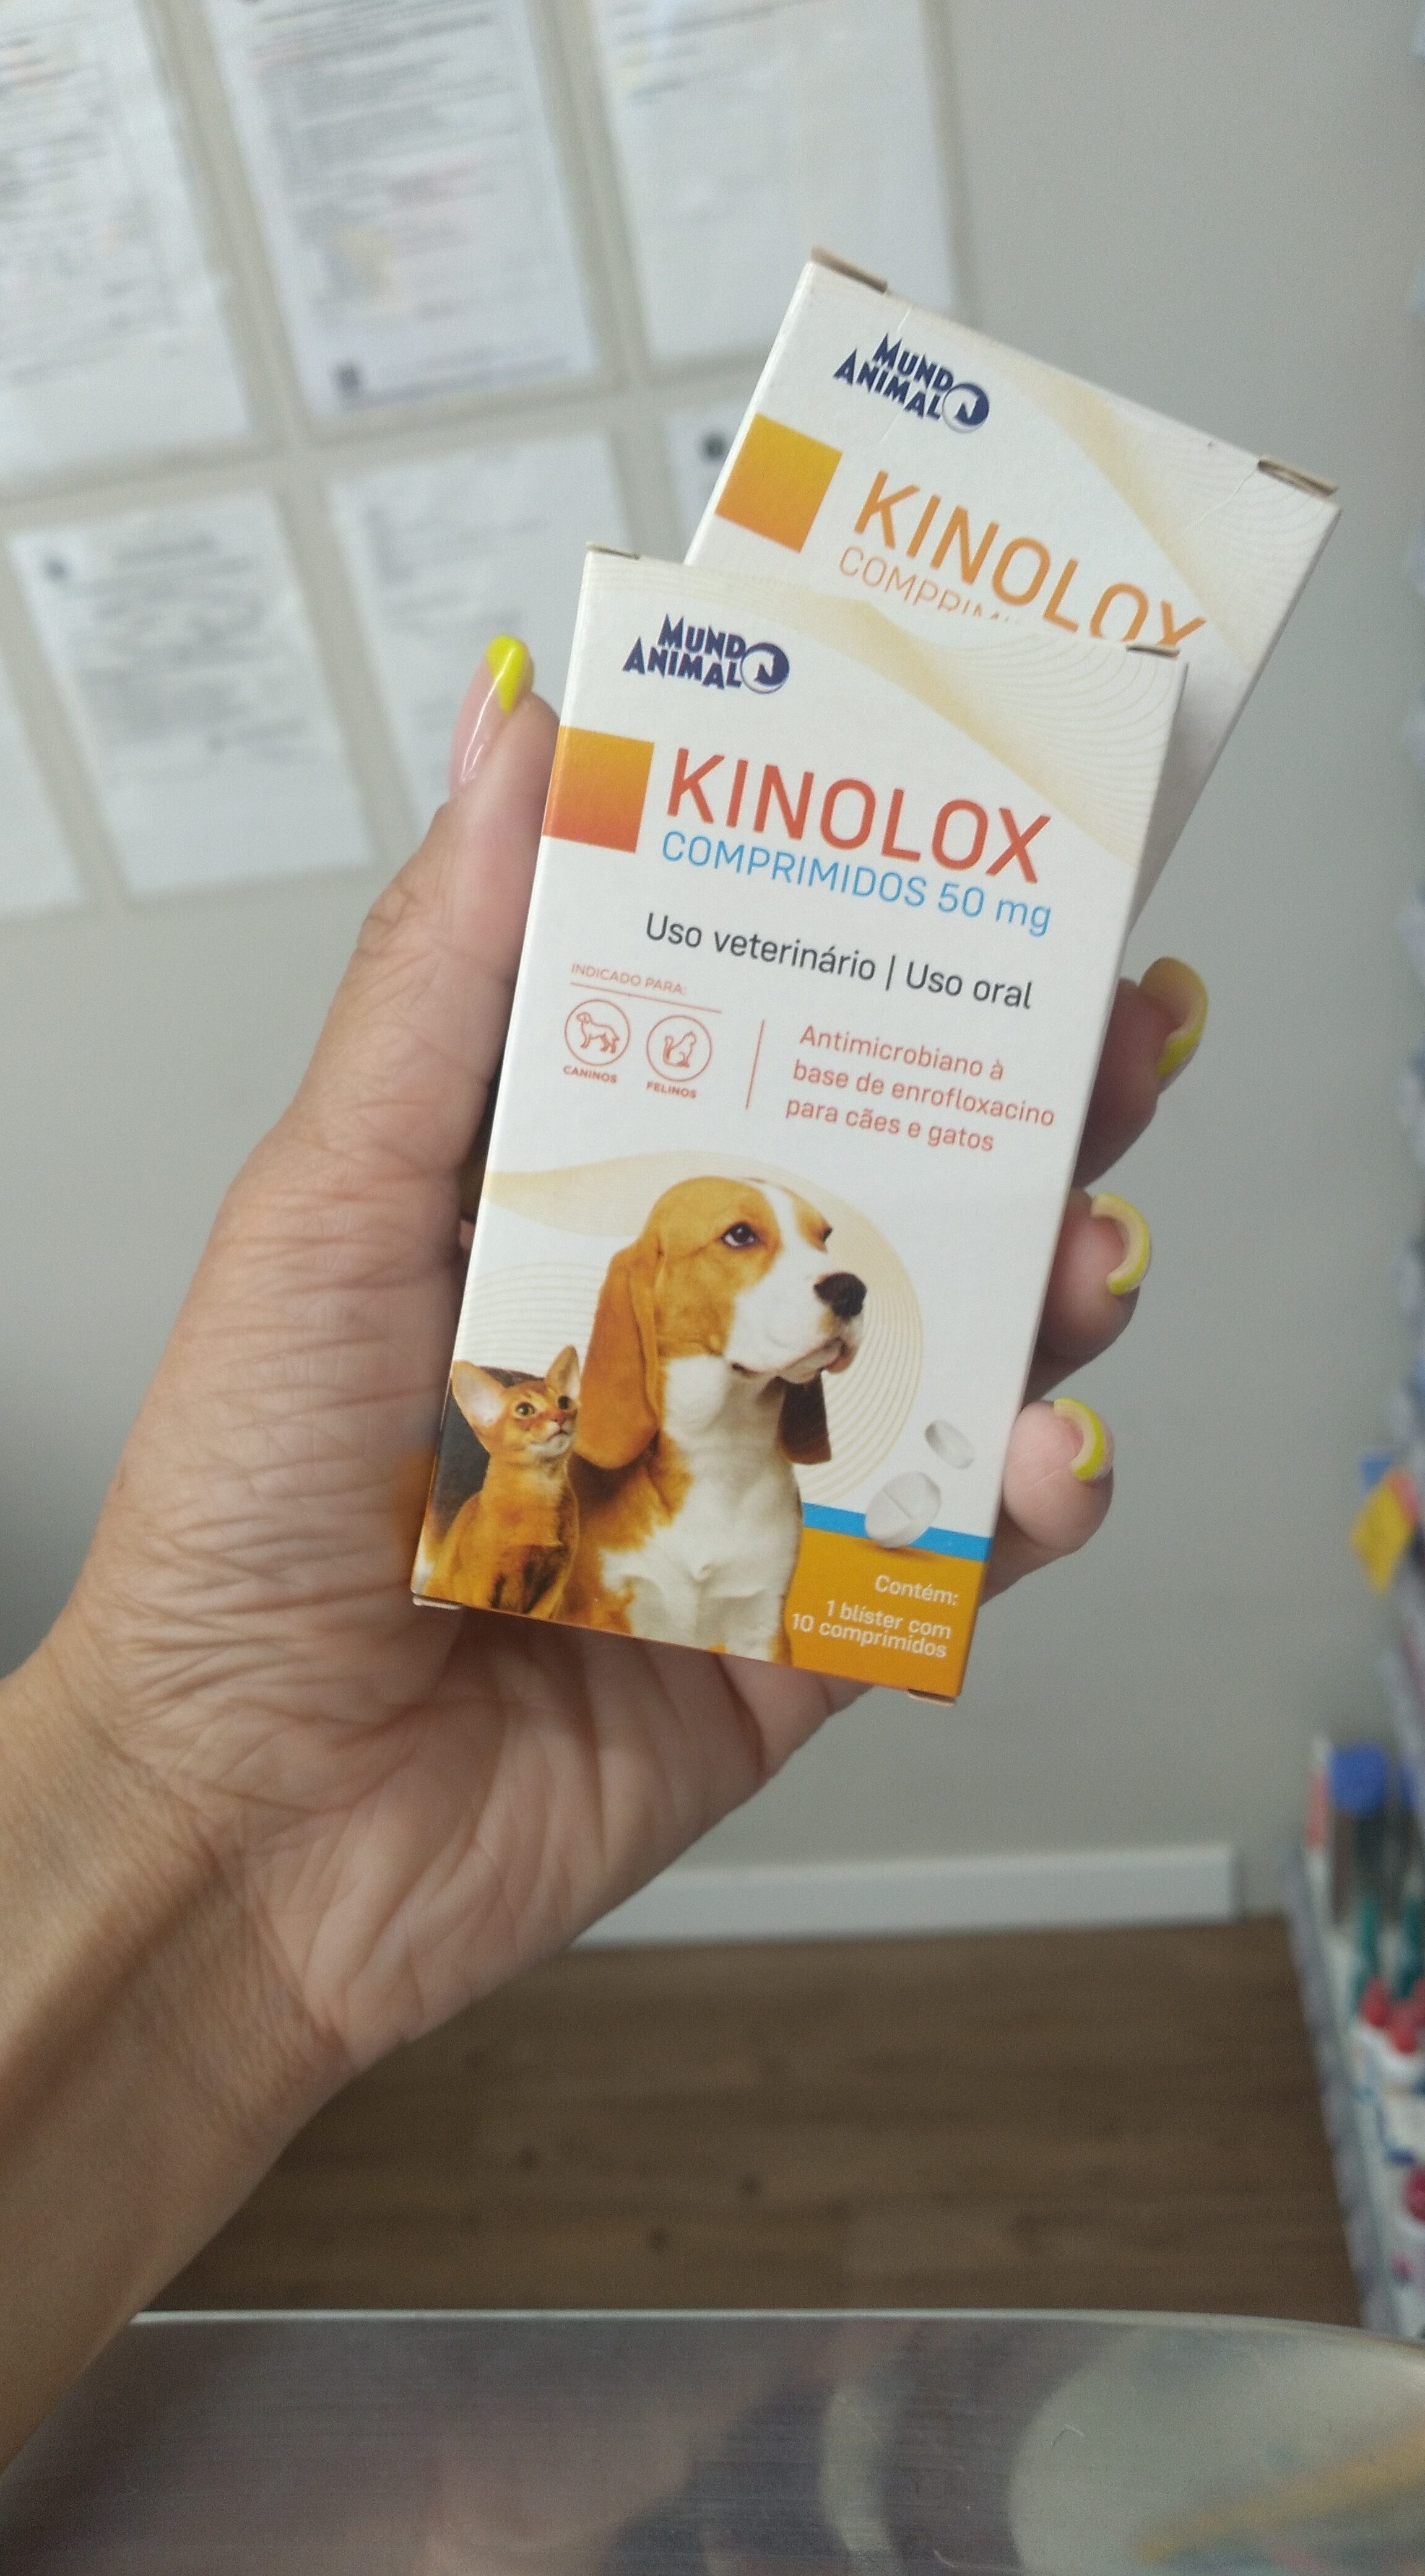 Kinolox 50mg - Product - pt